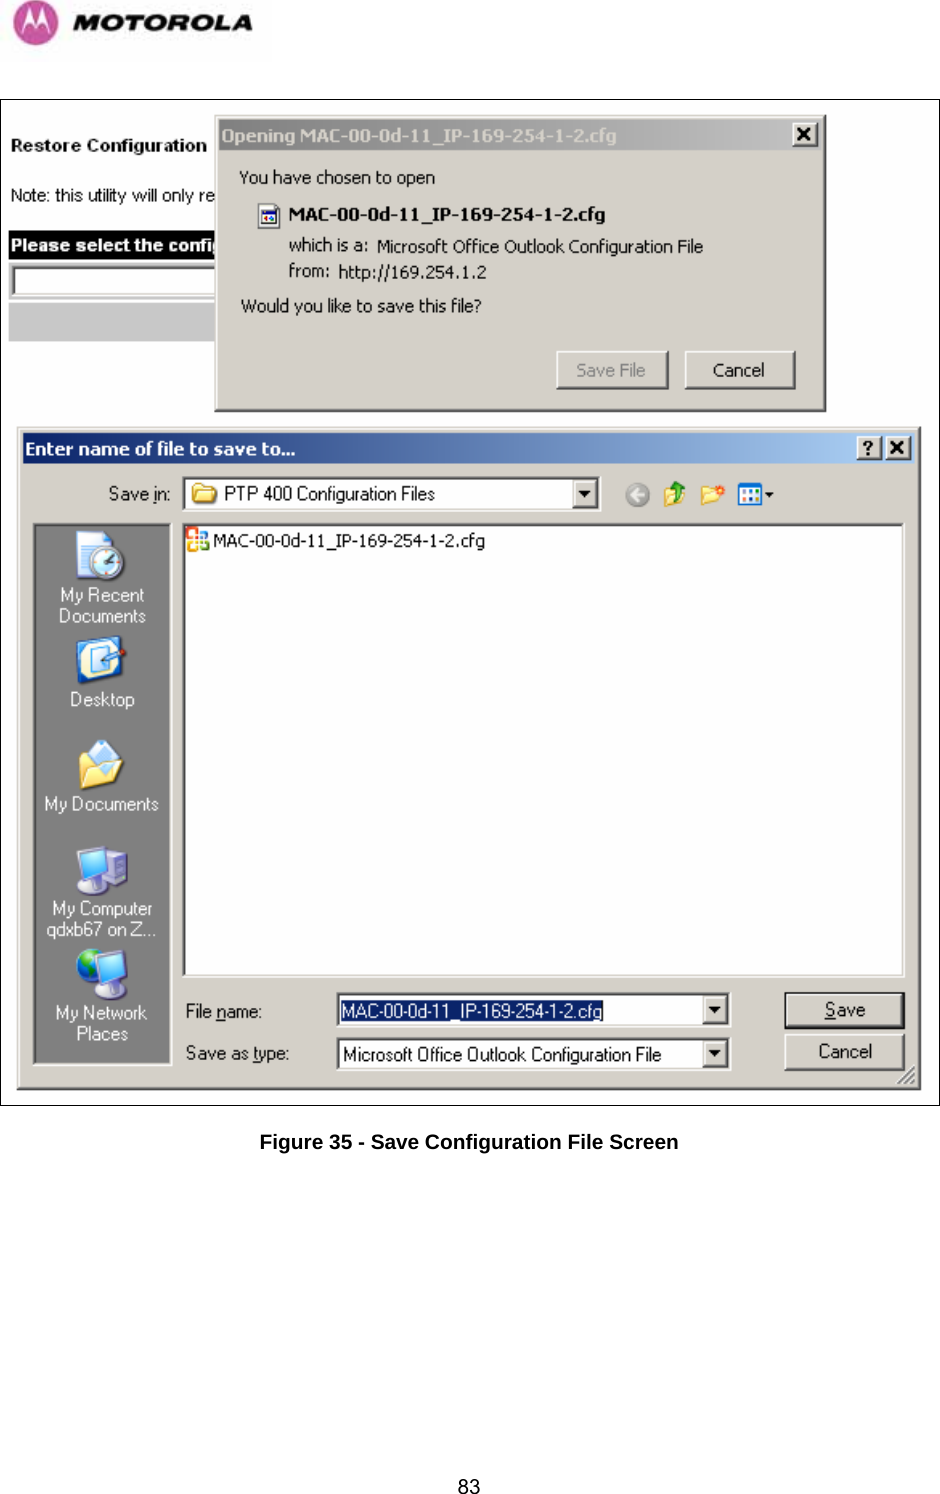   83 Figure 35 - Save Configuration File Screen 